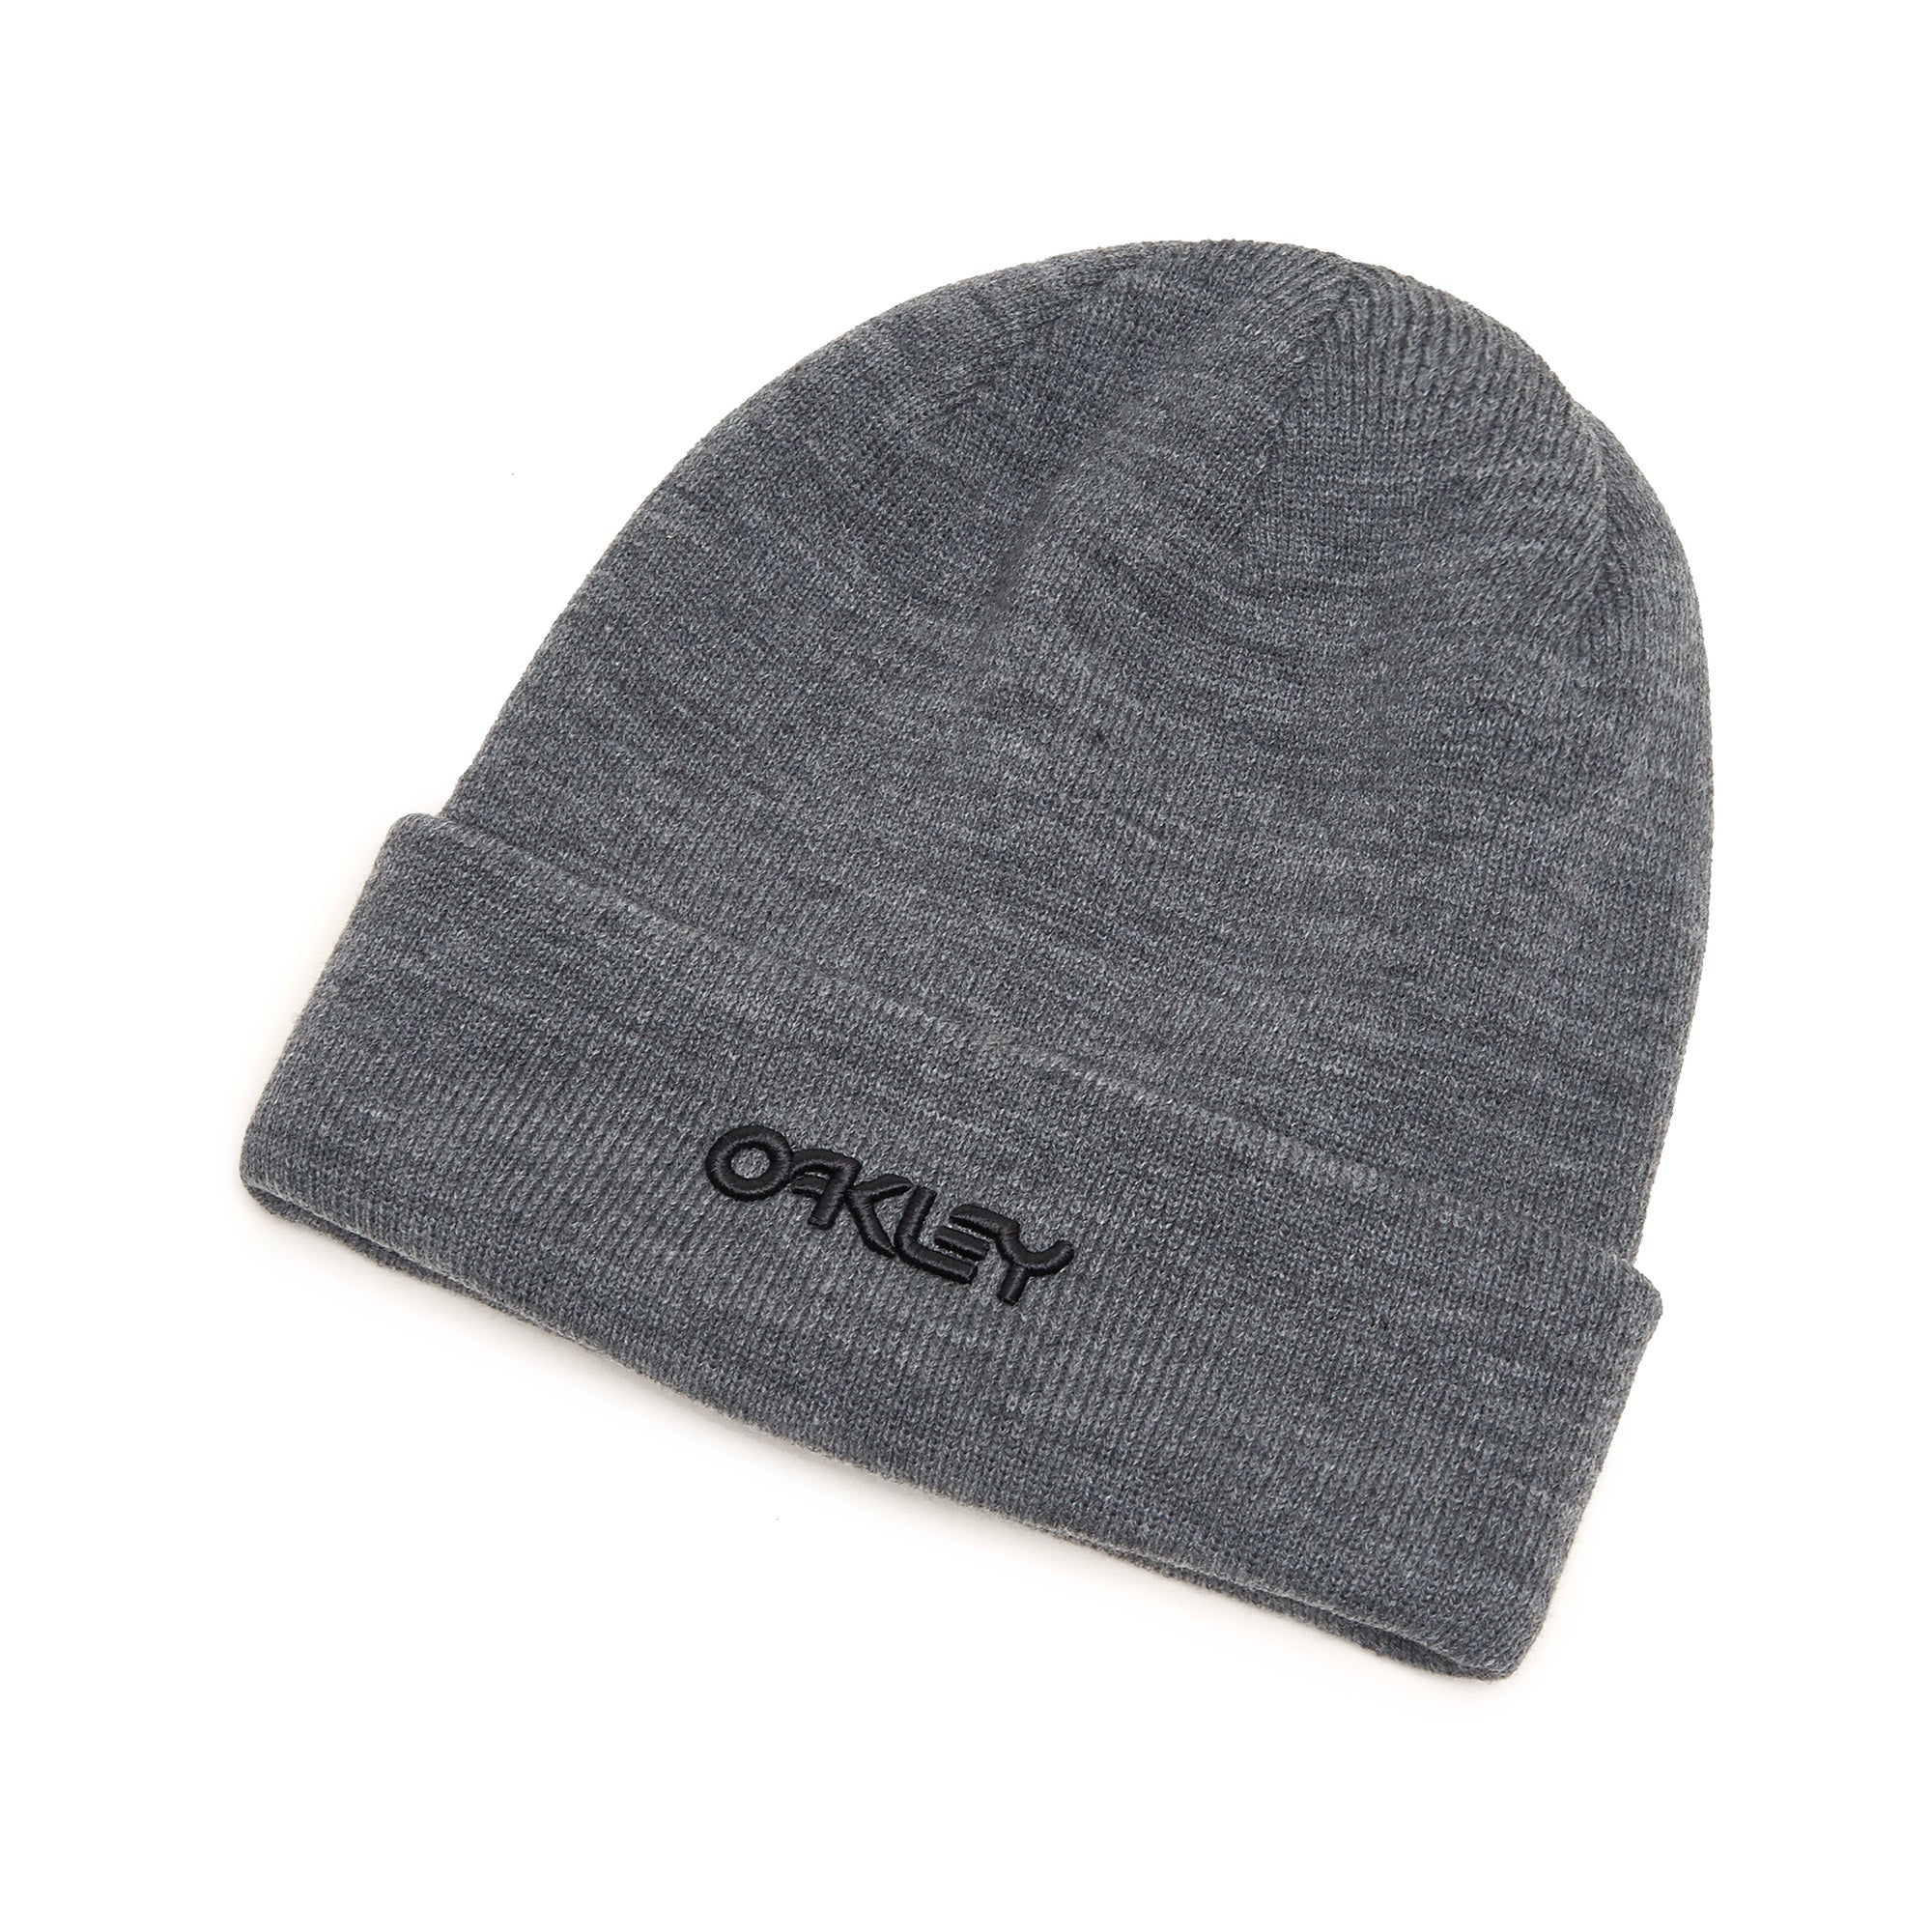 oakley-b1b-logo-beanie-hat-900256-grey